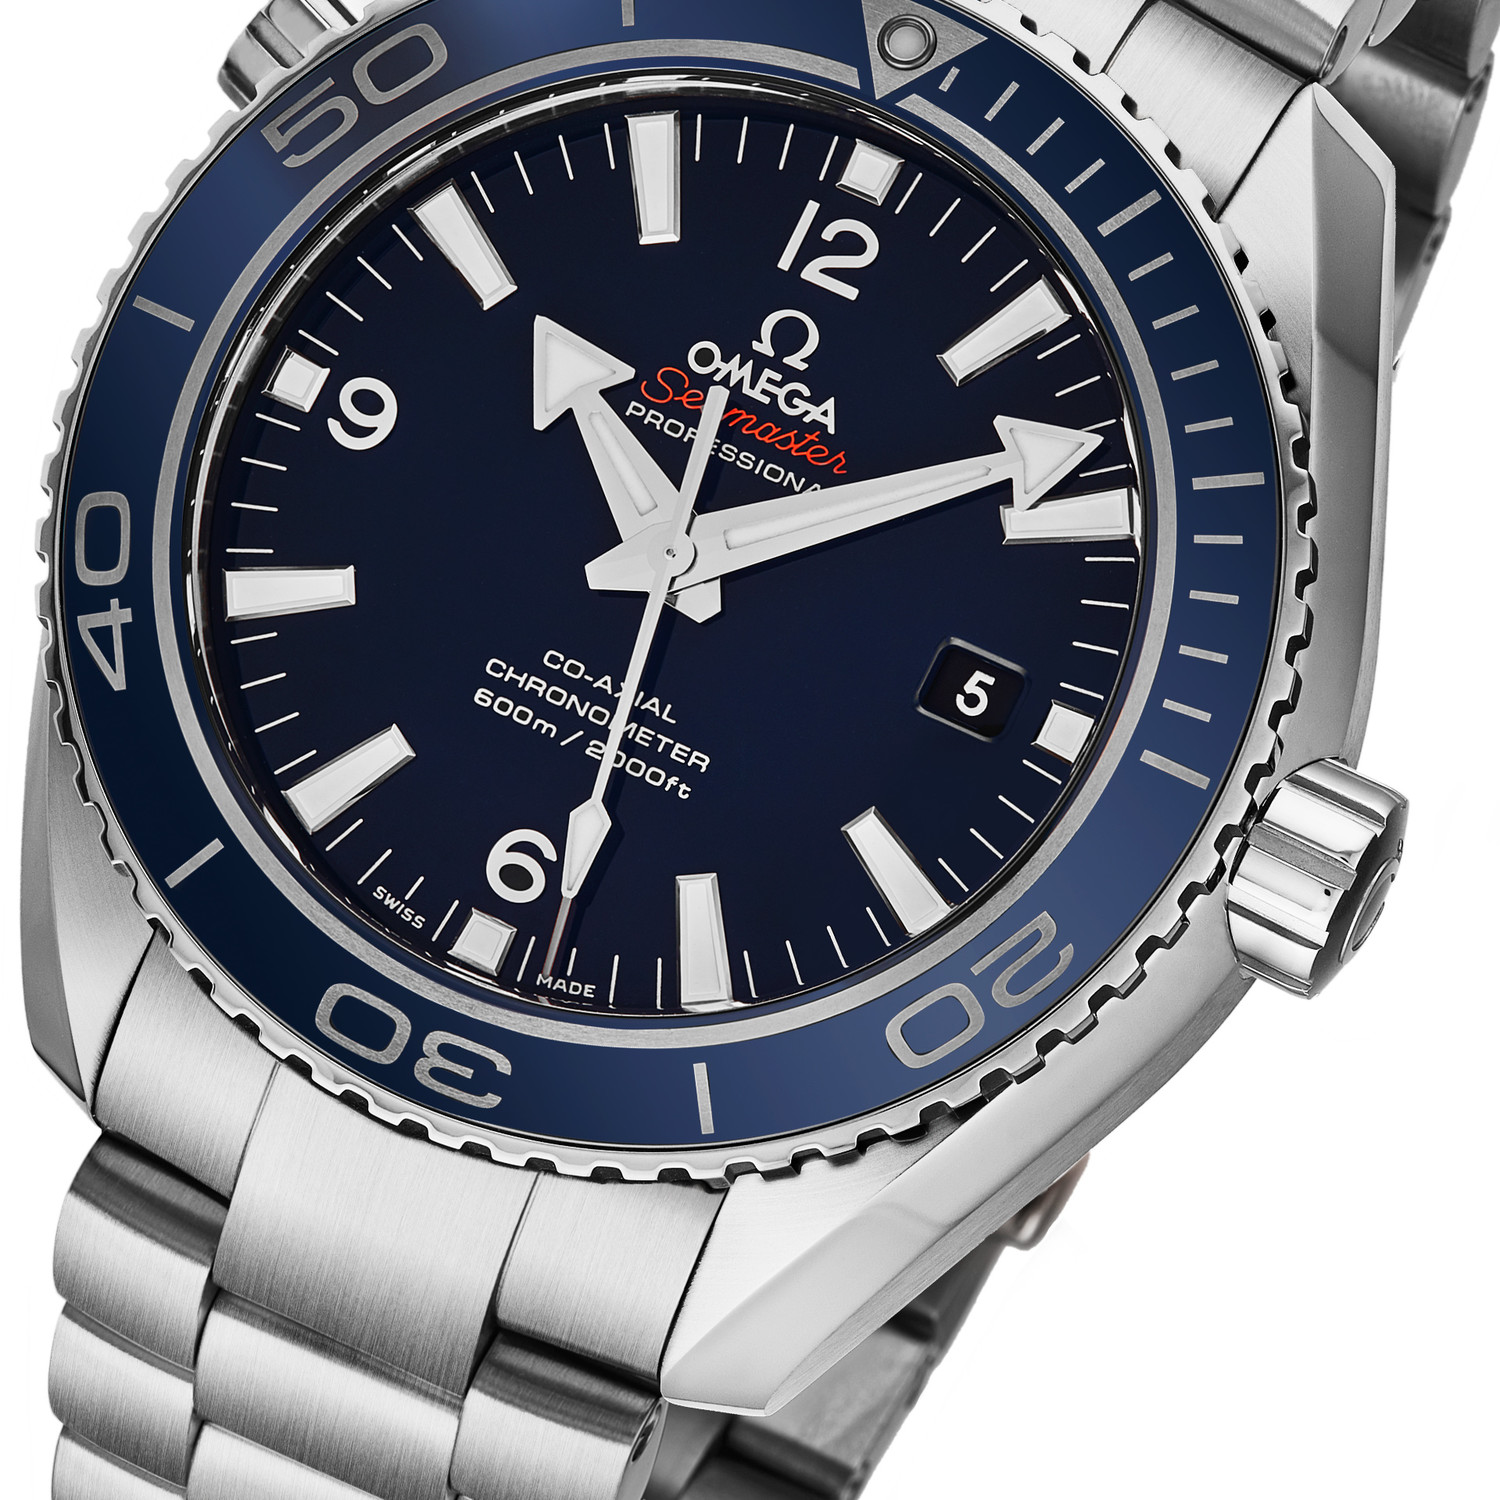 Omega Seamaster Automatic // 23290462103001 Impressive Timepieces